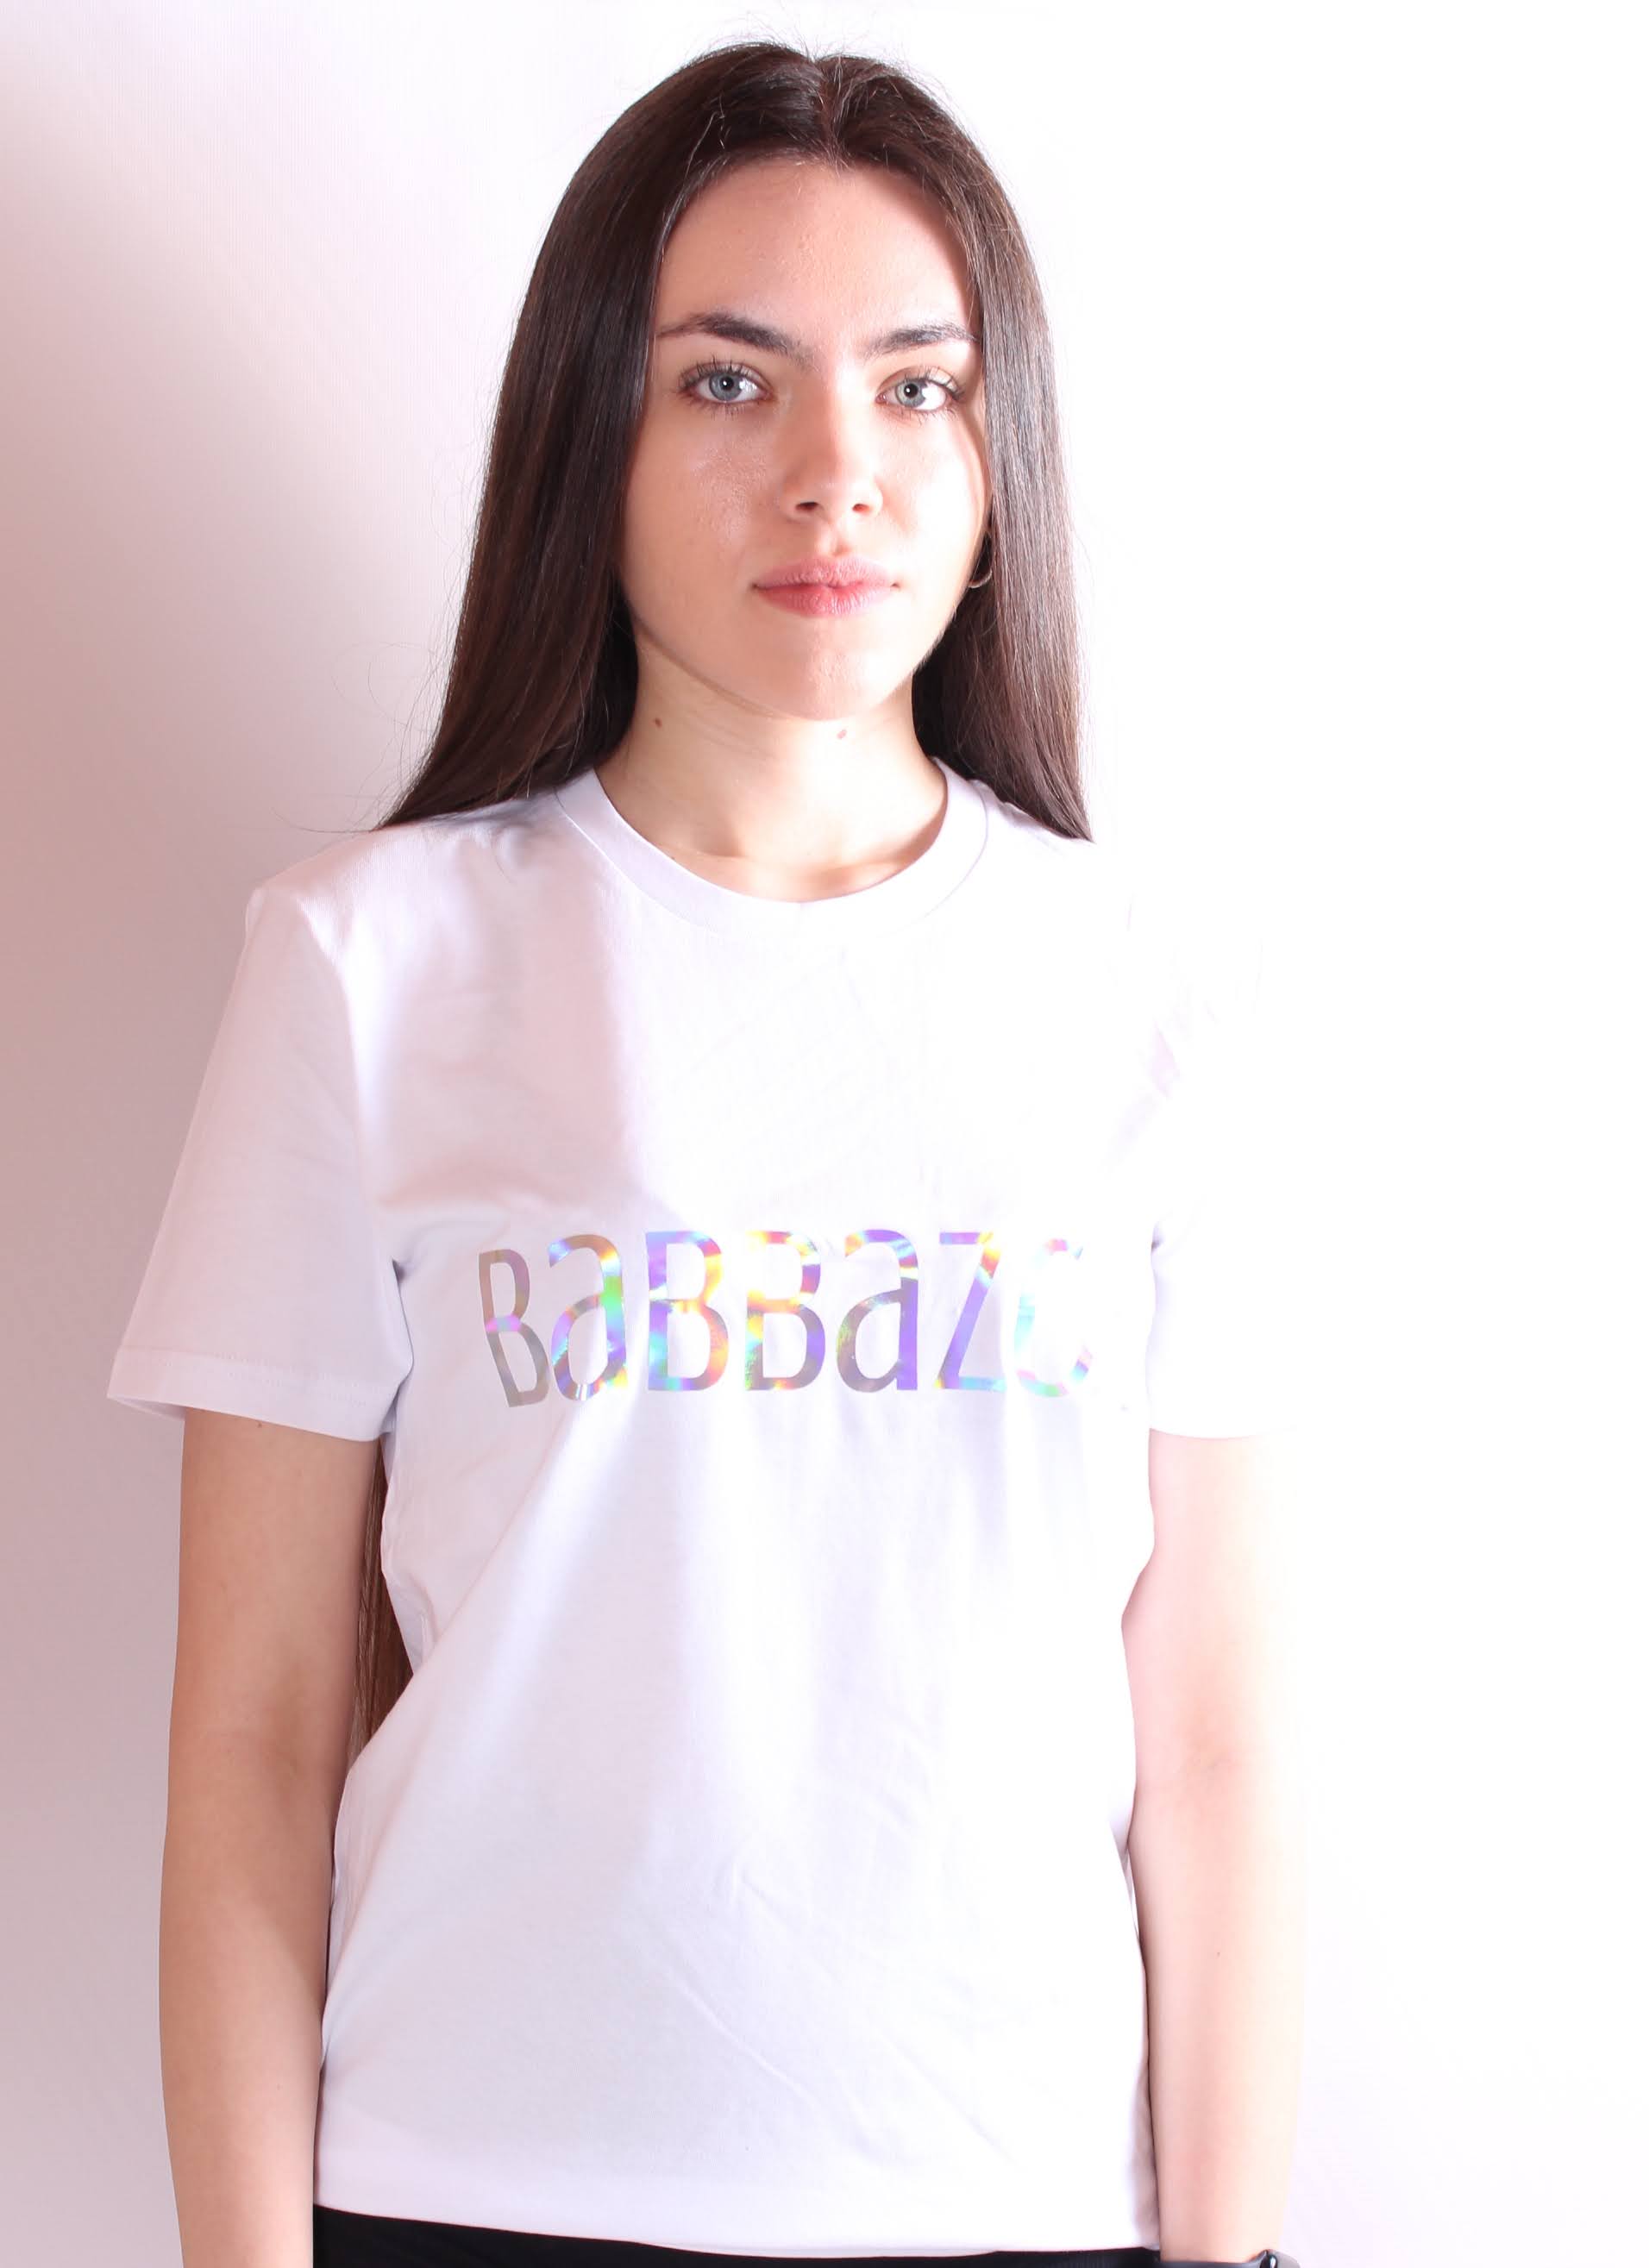 Babbazon T-Shirt - Babbazon French T-Shirt